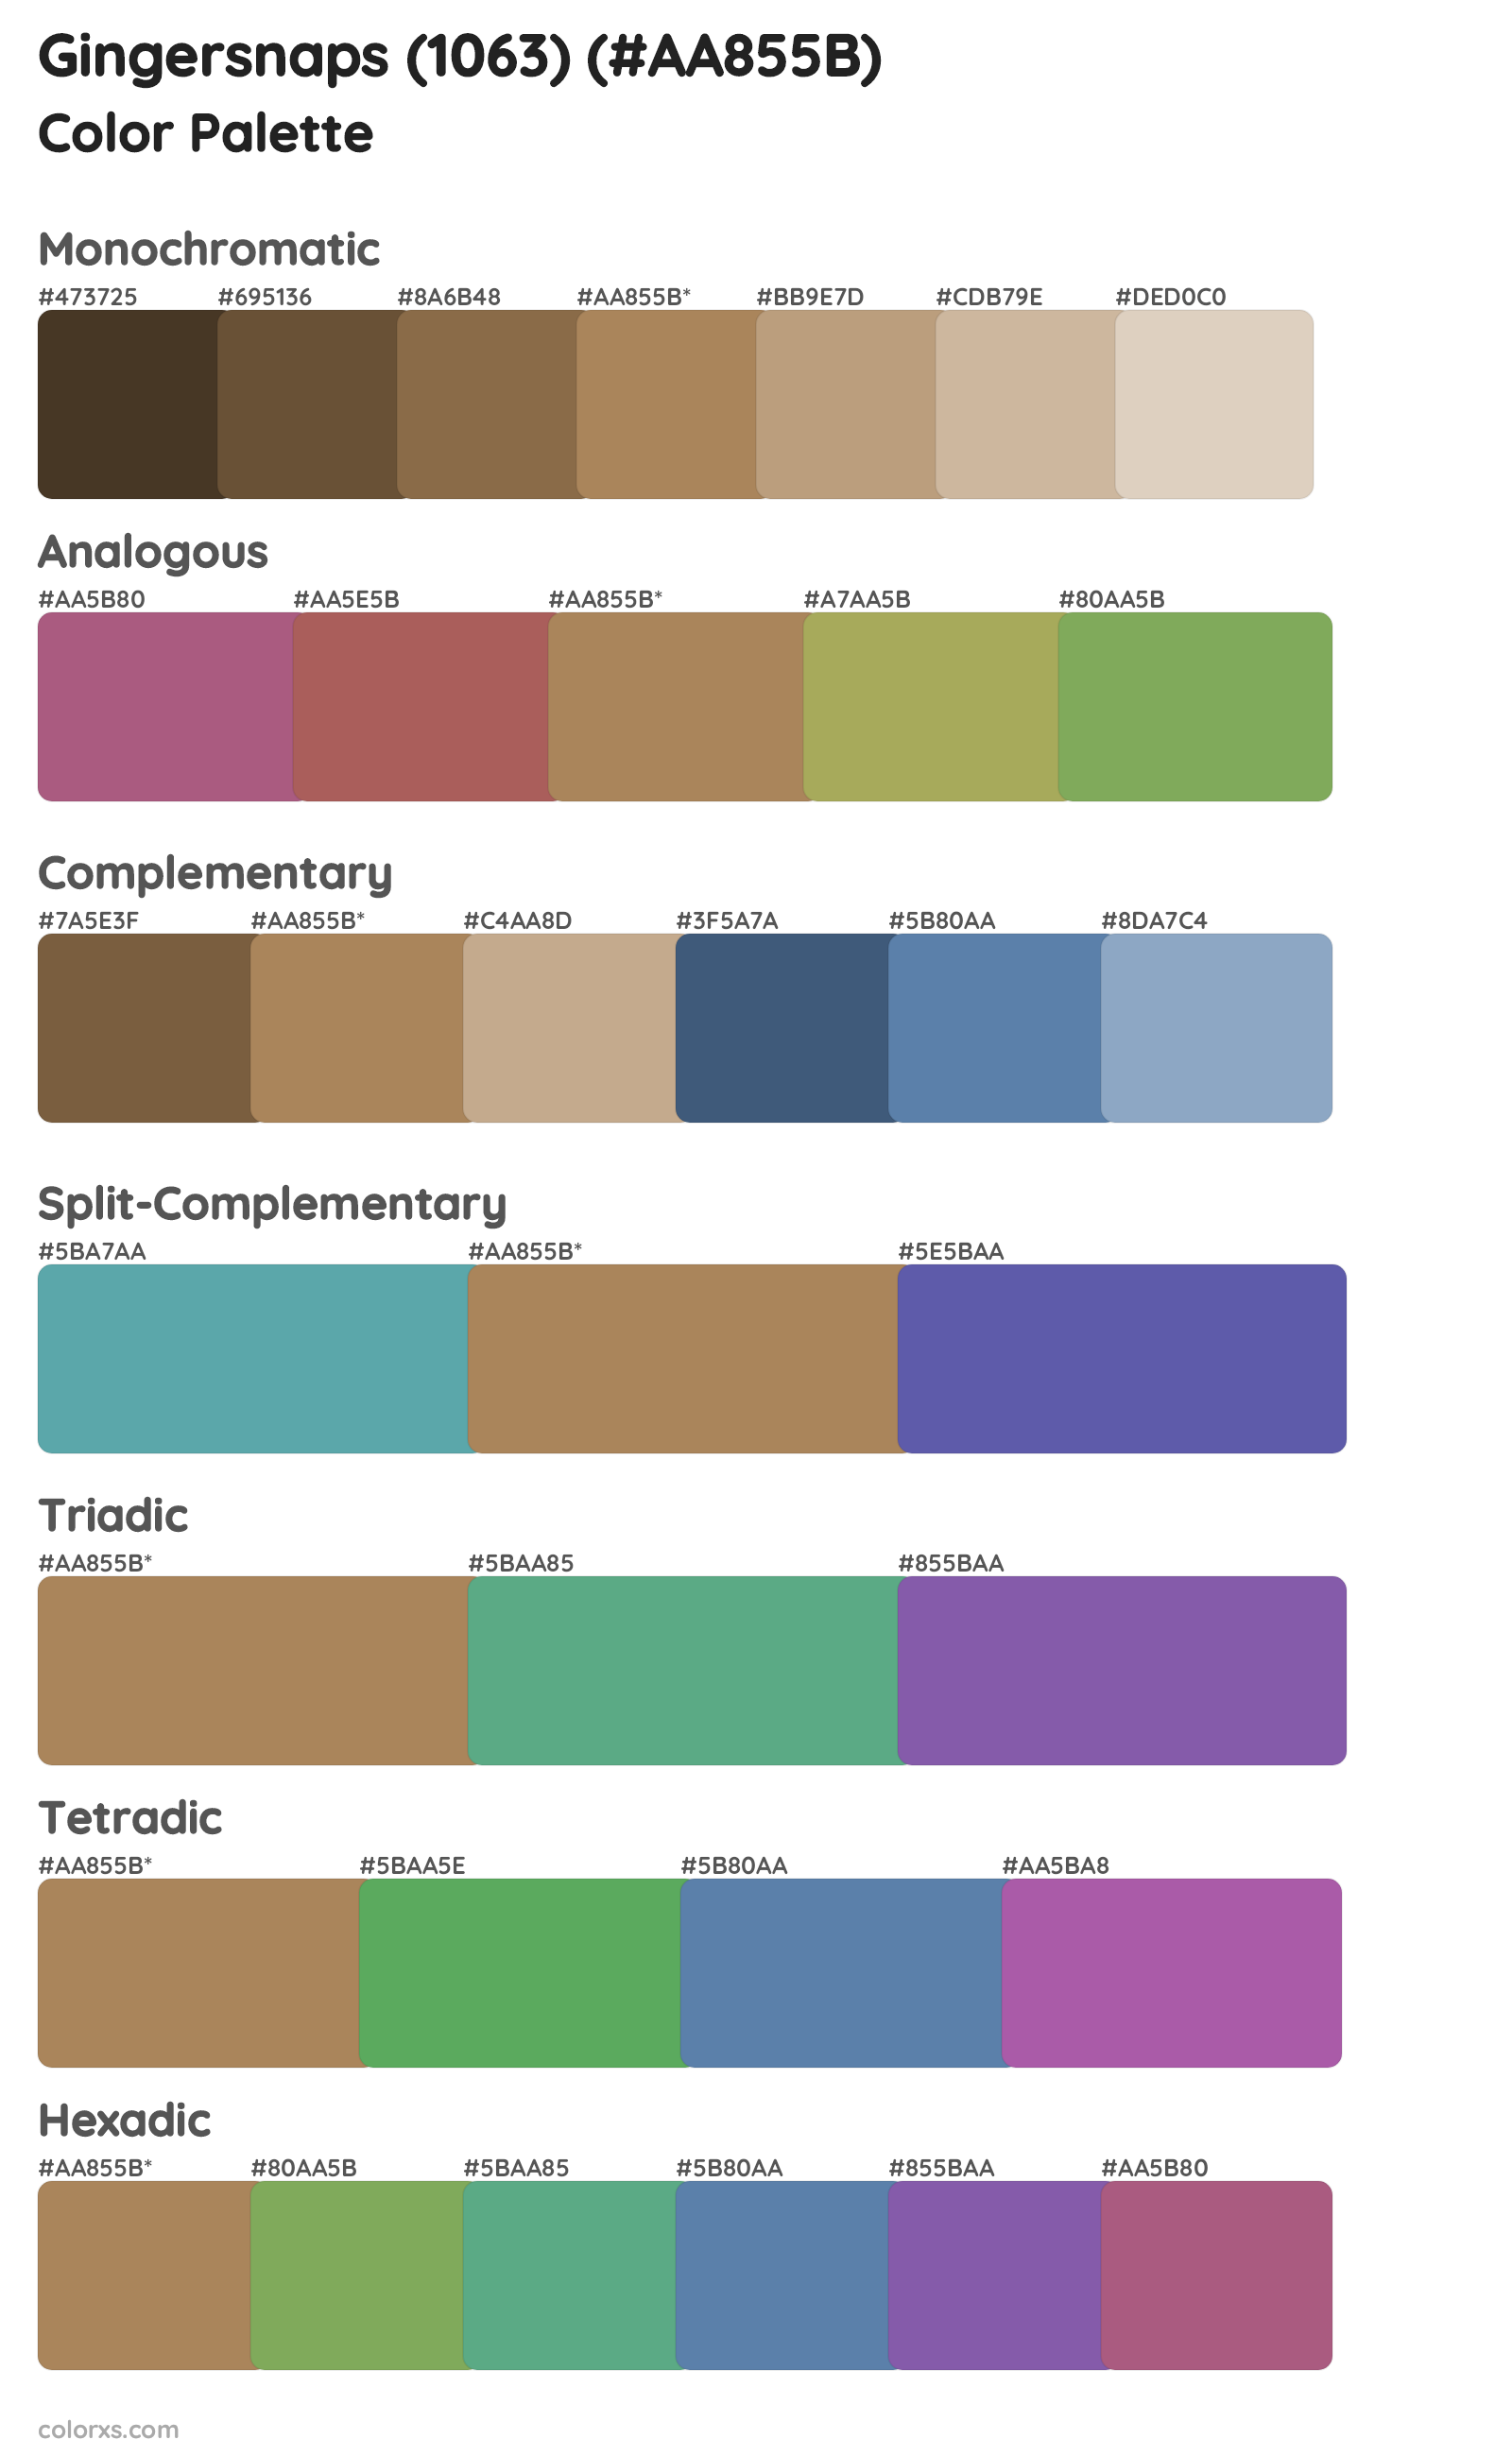 Gingersnaps (1063) Color Scheme Palettes